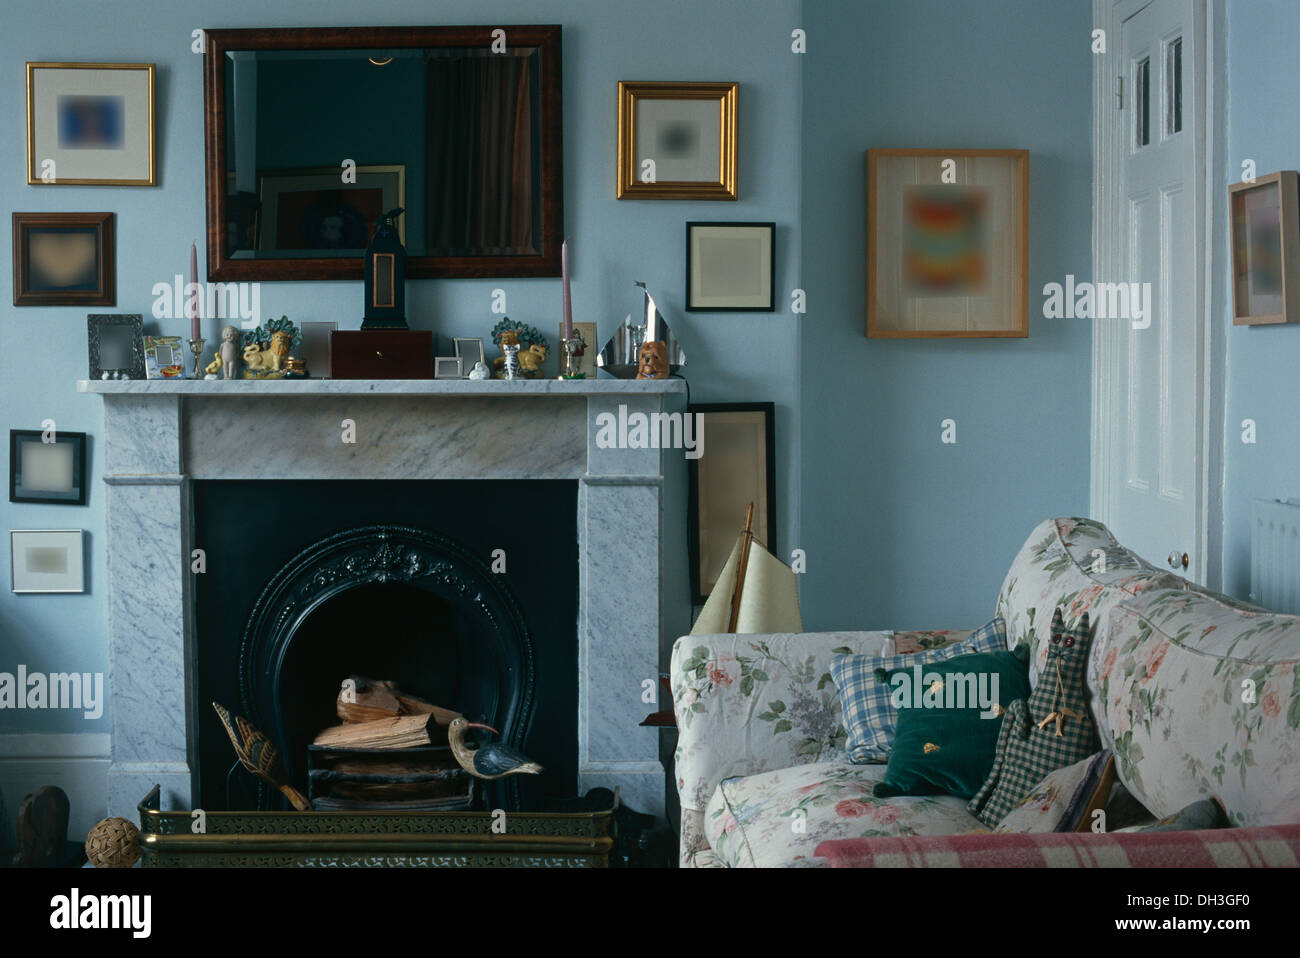 Miroir en acajou au-dessus de la cheminée de marbre en bleu pâle pays salon avec canapé floral Banque D'Images